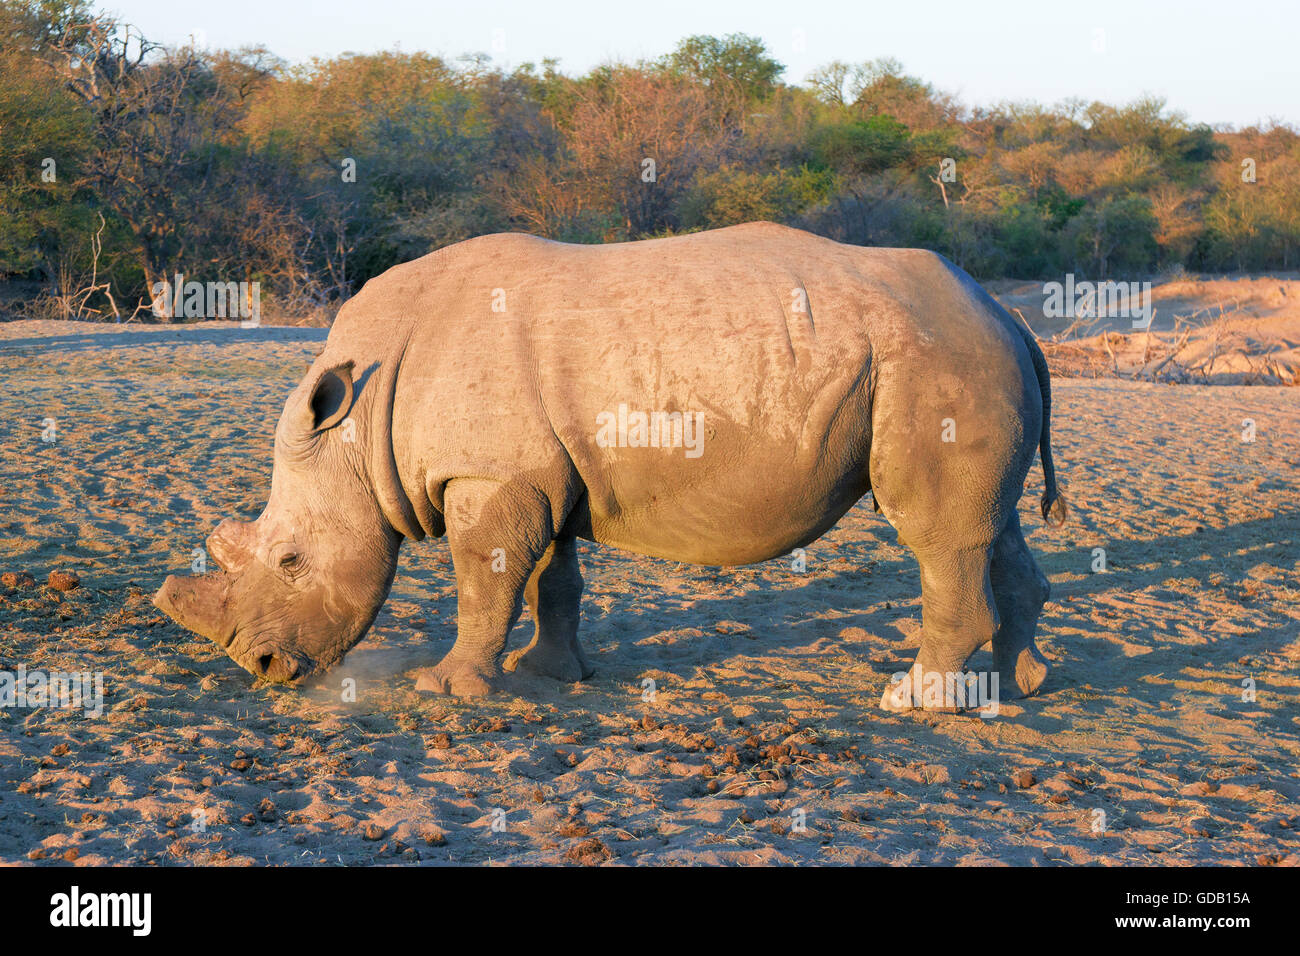 Vista laterale di un dehorned rhino. Dehorning dei rinoceronti è uno strumento per proteggere il rhino da caccia di frodo. Foto Stock